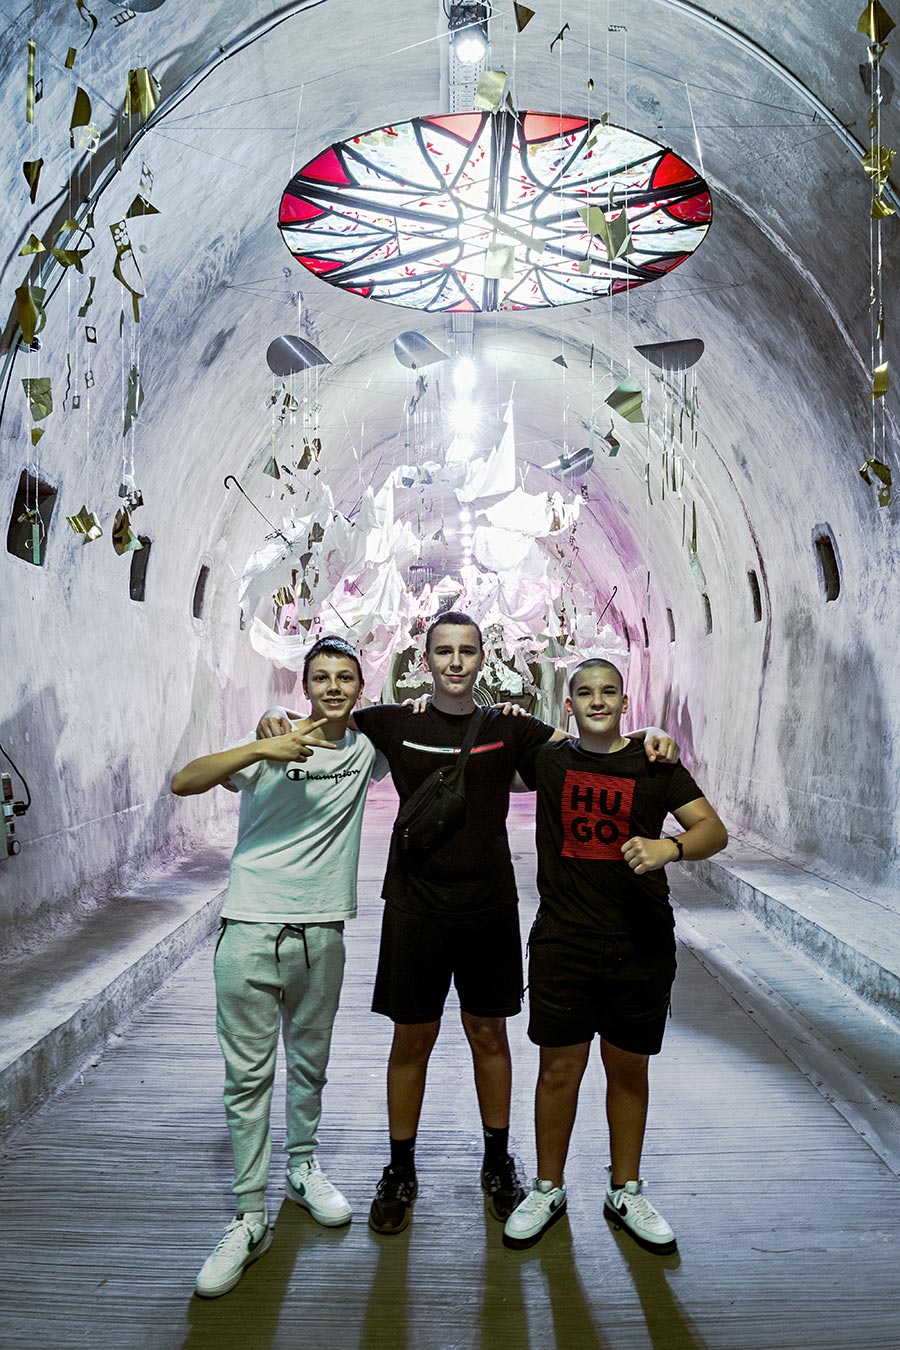 zagreb-tunnel2-kroatien-antjekroeger